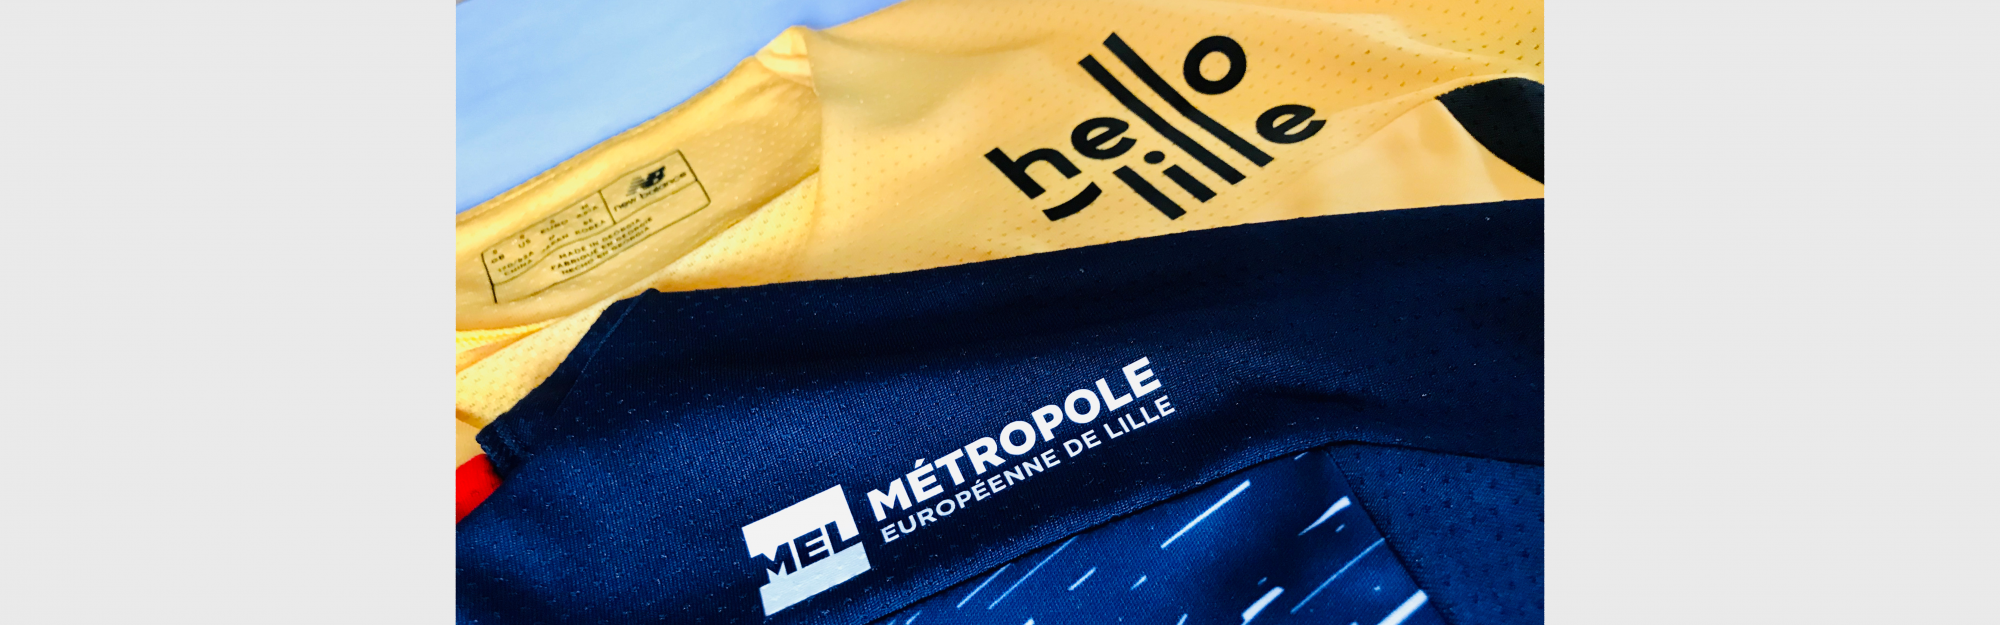 La MEL Hello Lille s’affichent sur les nouveaux maillots du LOSC